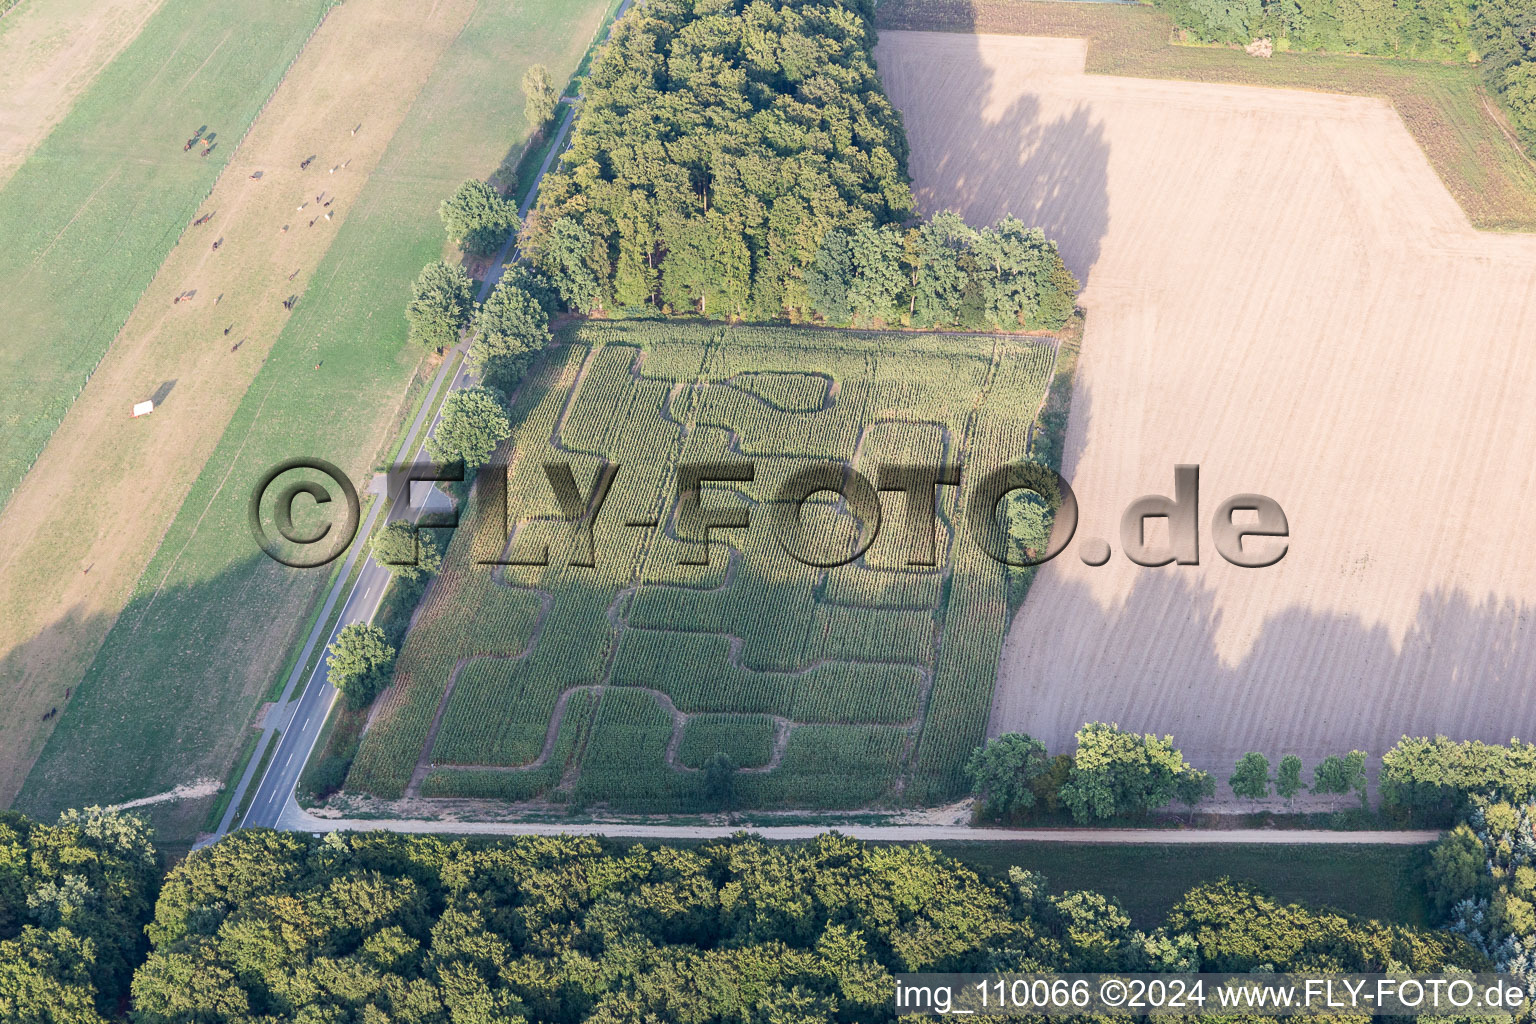 Vue aérienne de Labyrinthe - labyrinthe dans un champ de maïs à Amelinghausen dans le département Basse-Saxe, Allemagne